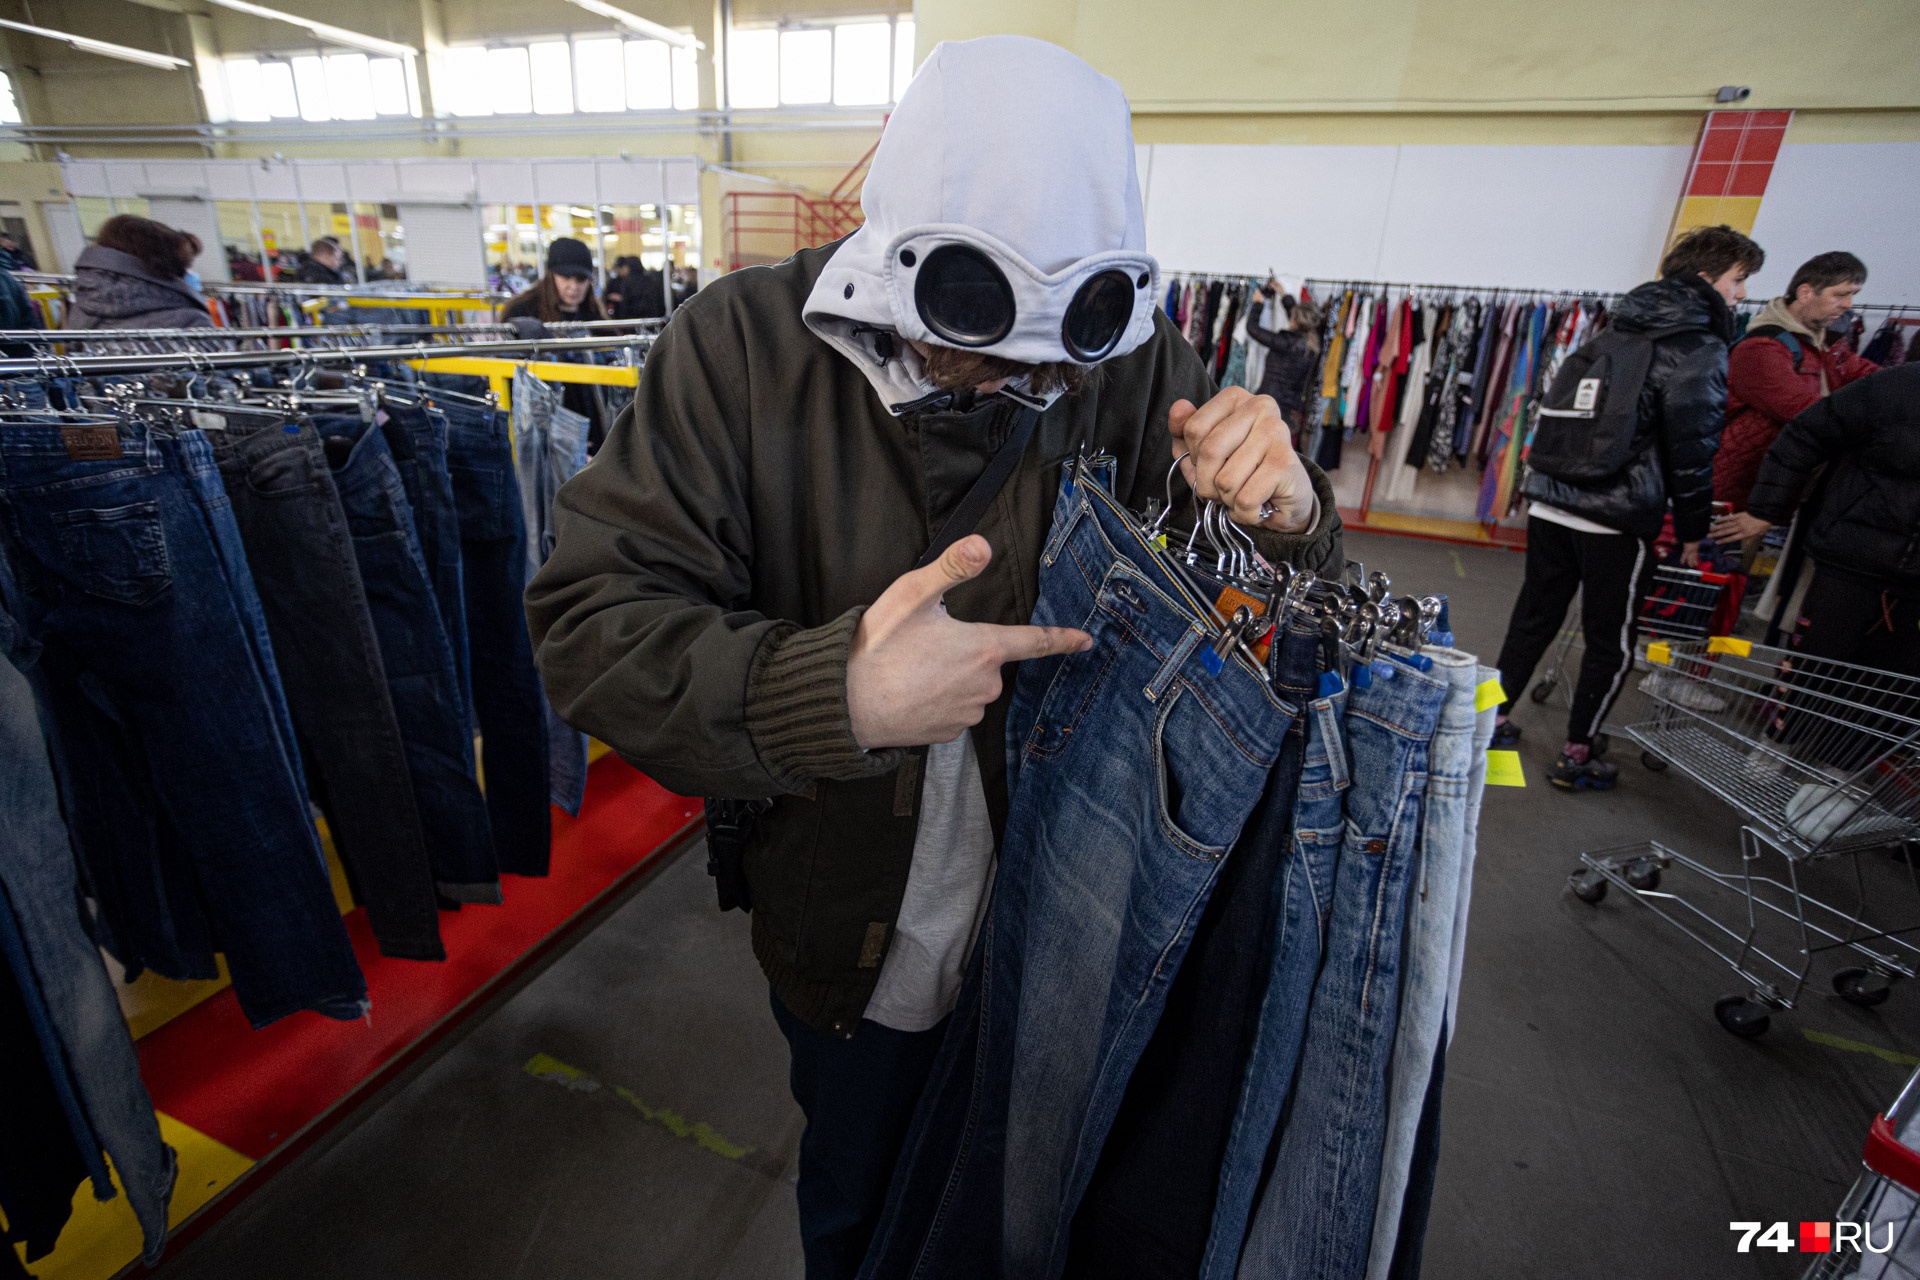 Практически половина всех покупателей — школьники, ищут модную недорогую одежду